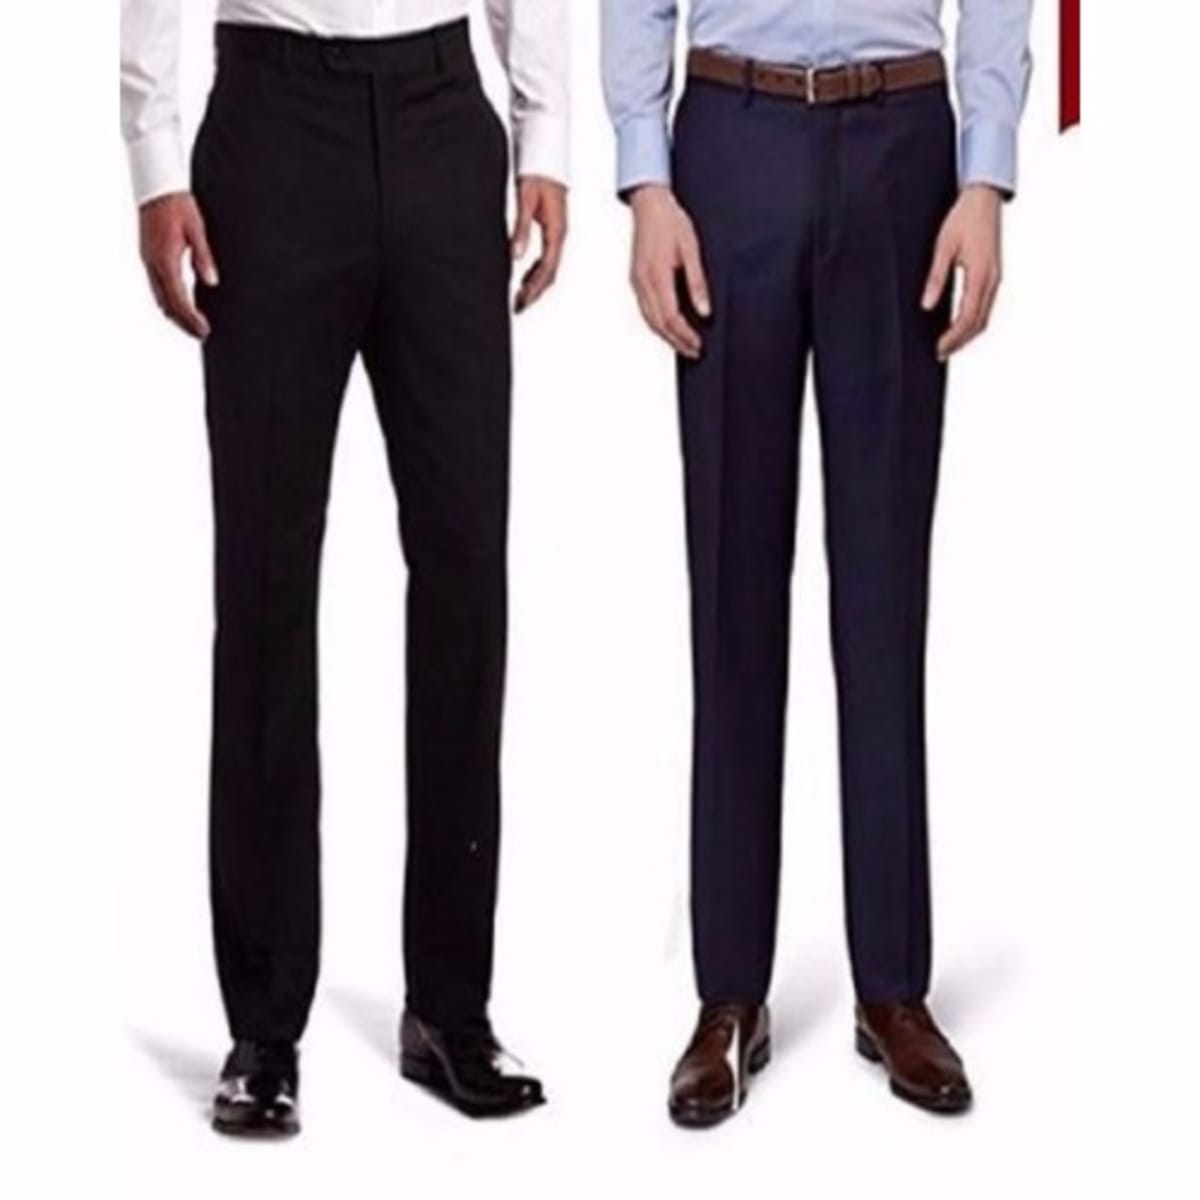 Men's Smart Trouser - Black & Blue